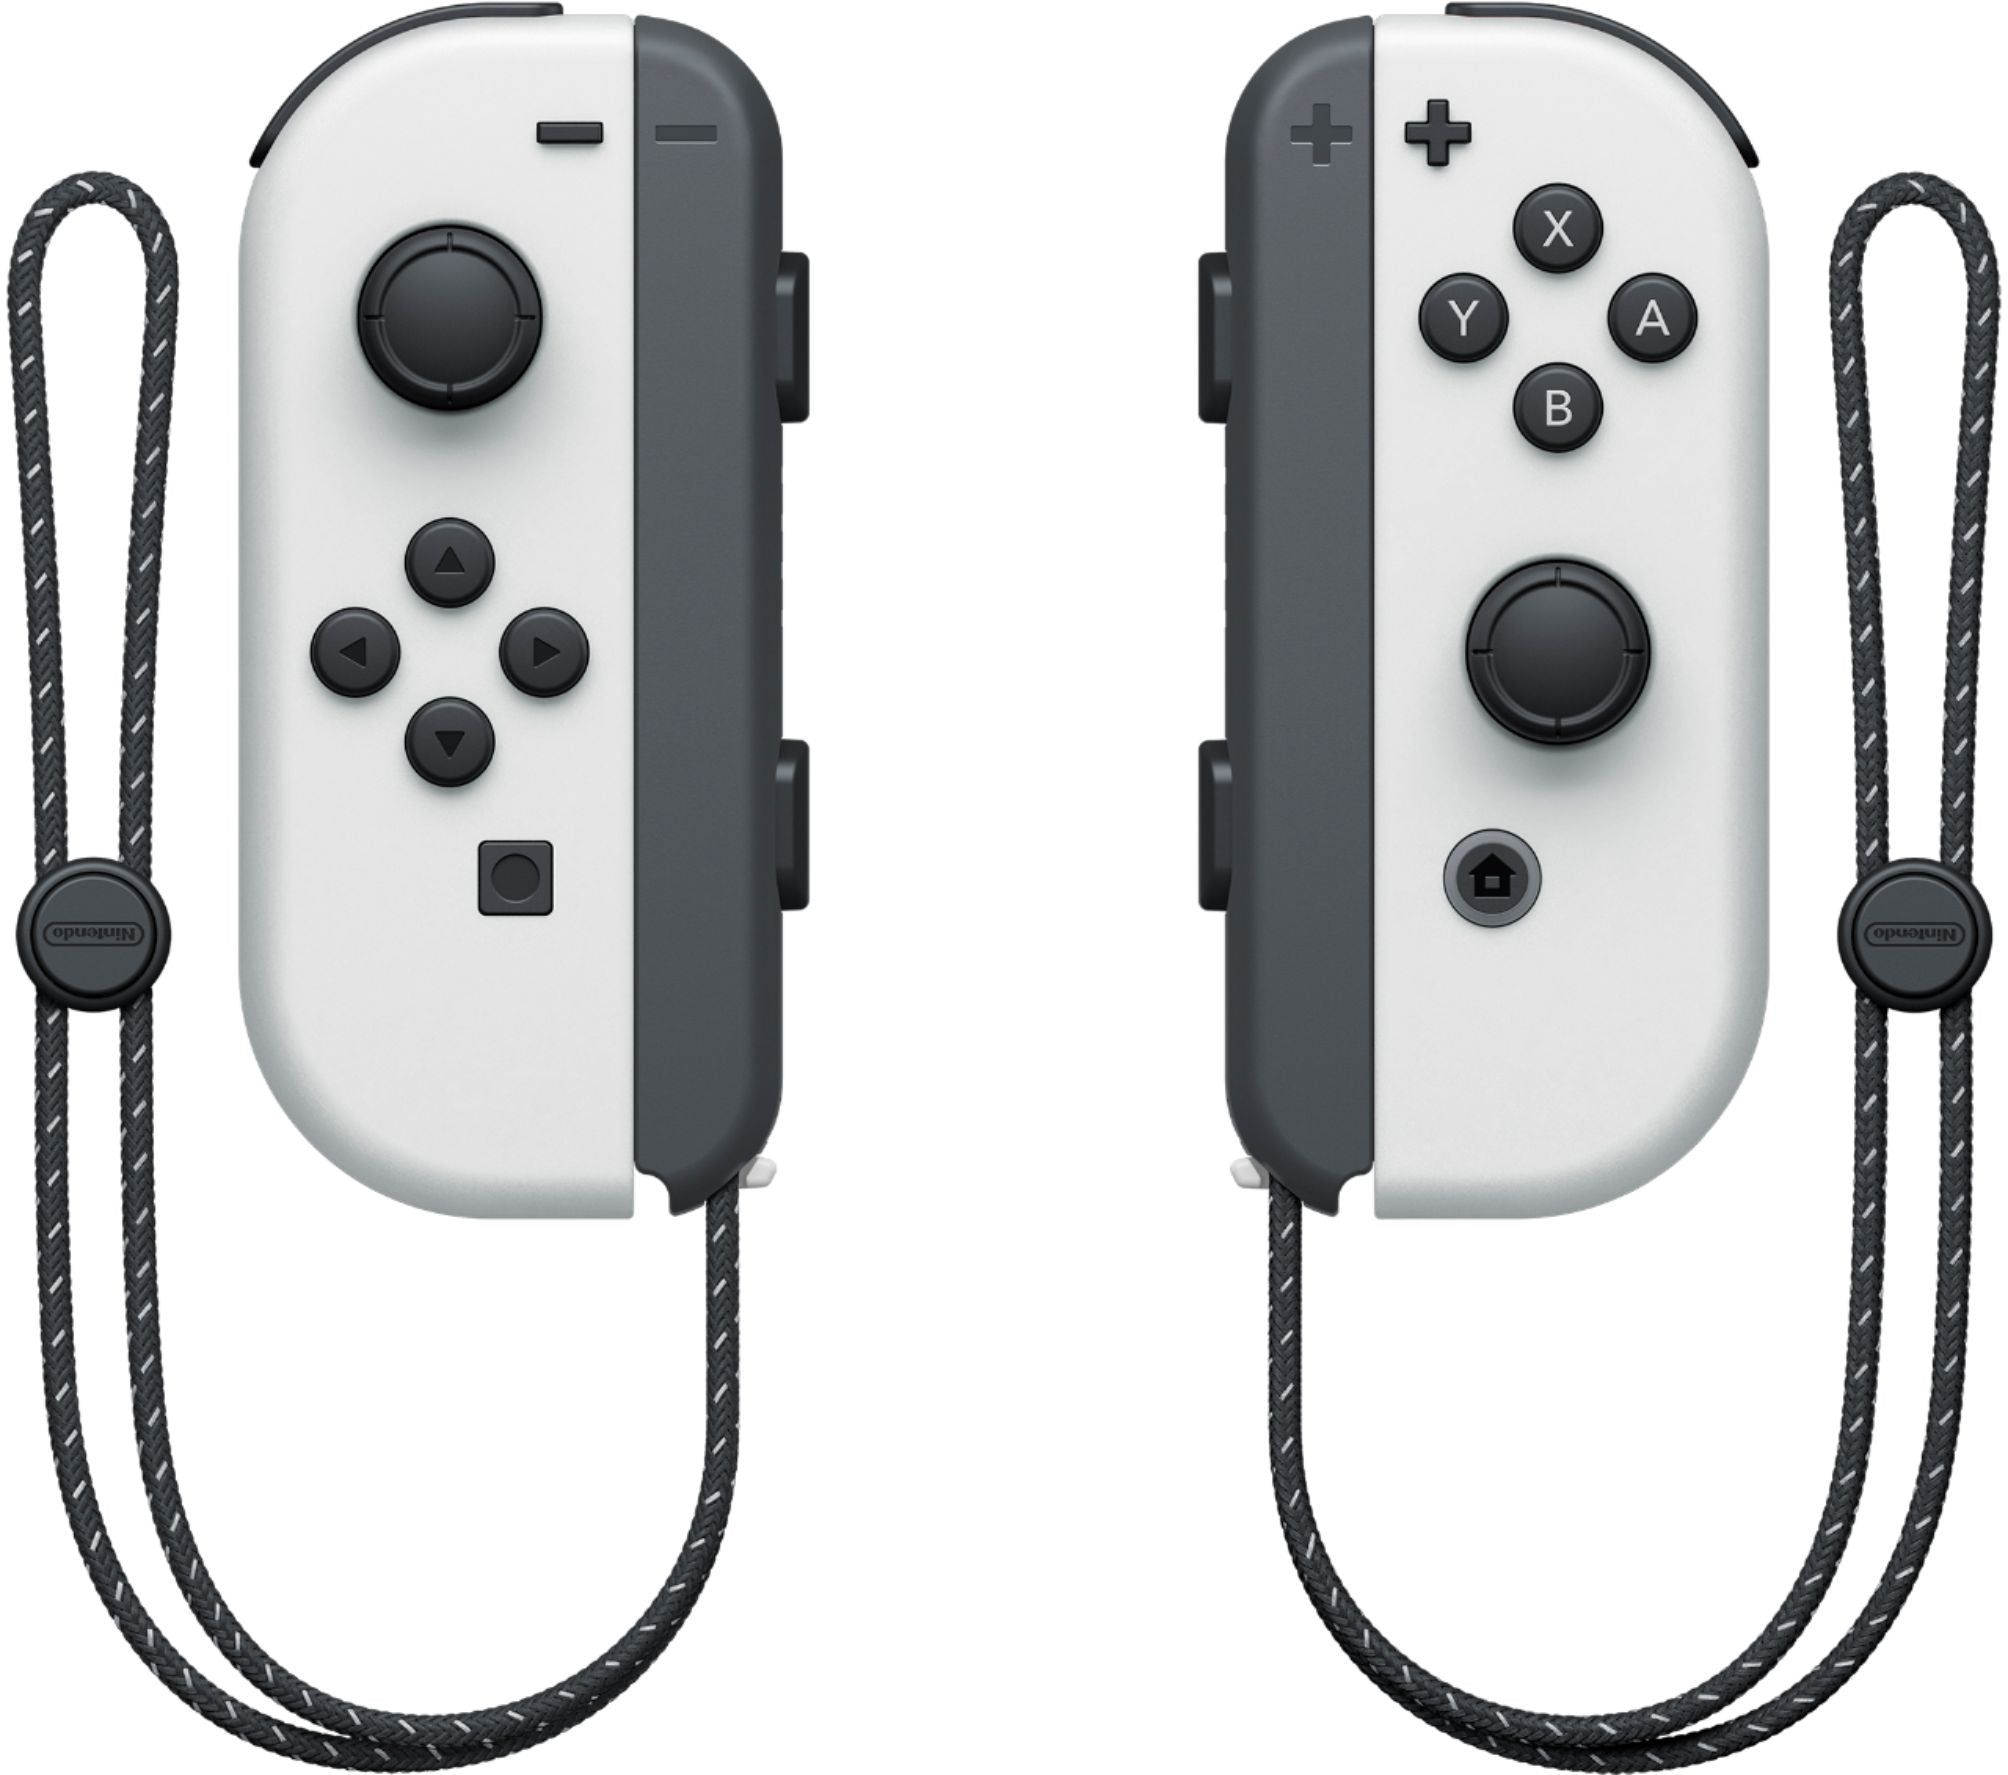 Nintendo Switch (OLED model) White Set